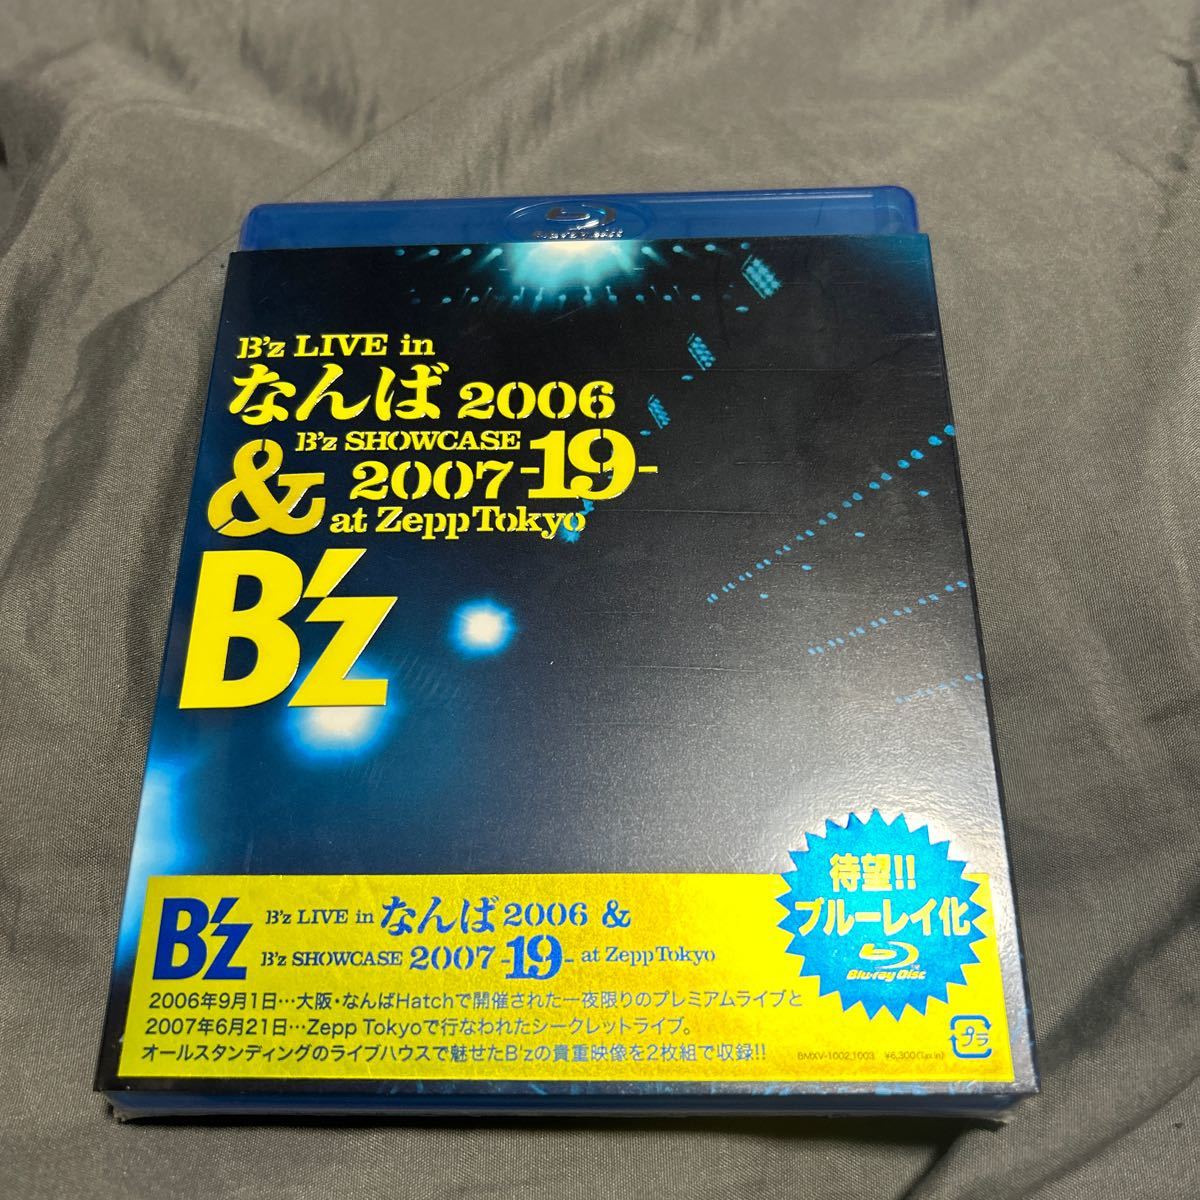 B’z LIVE in なんば 2006 & B’z SHOWCASE 2007-19-at Zepp Tokyo(Blu-ray Disc) 新品未開封の画像1